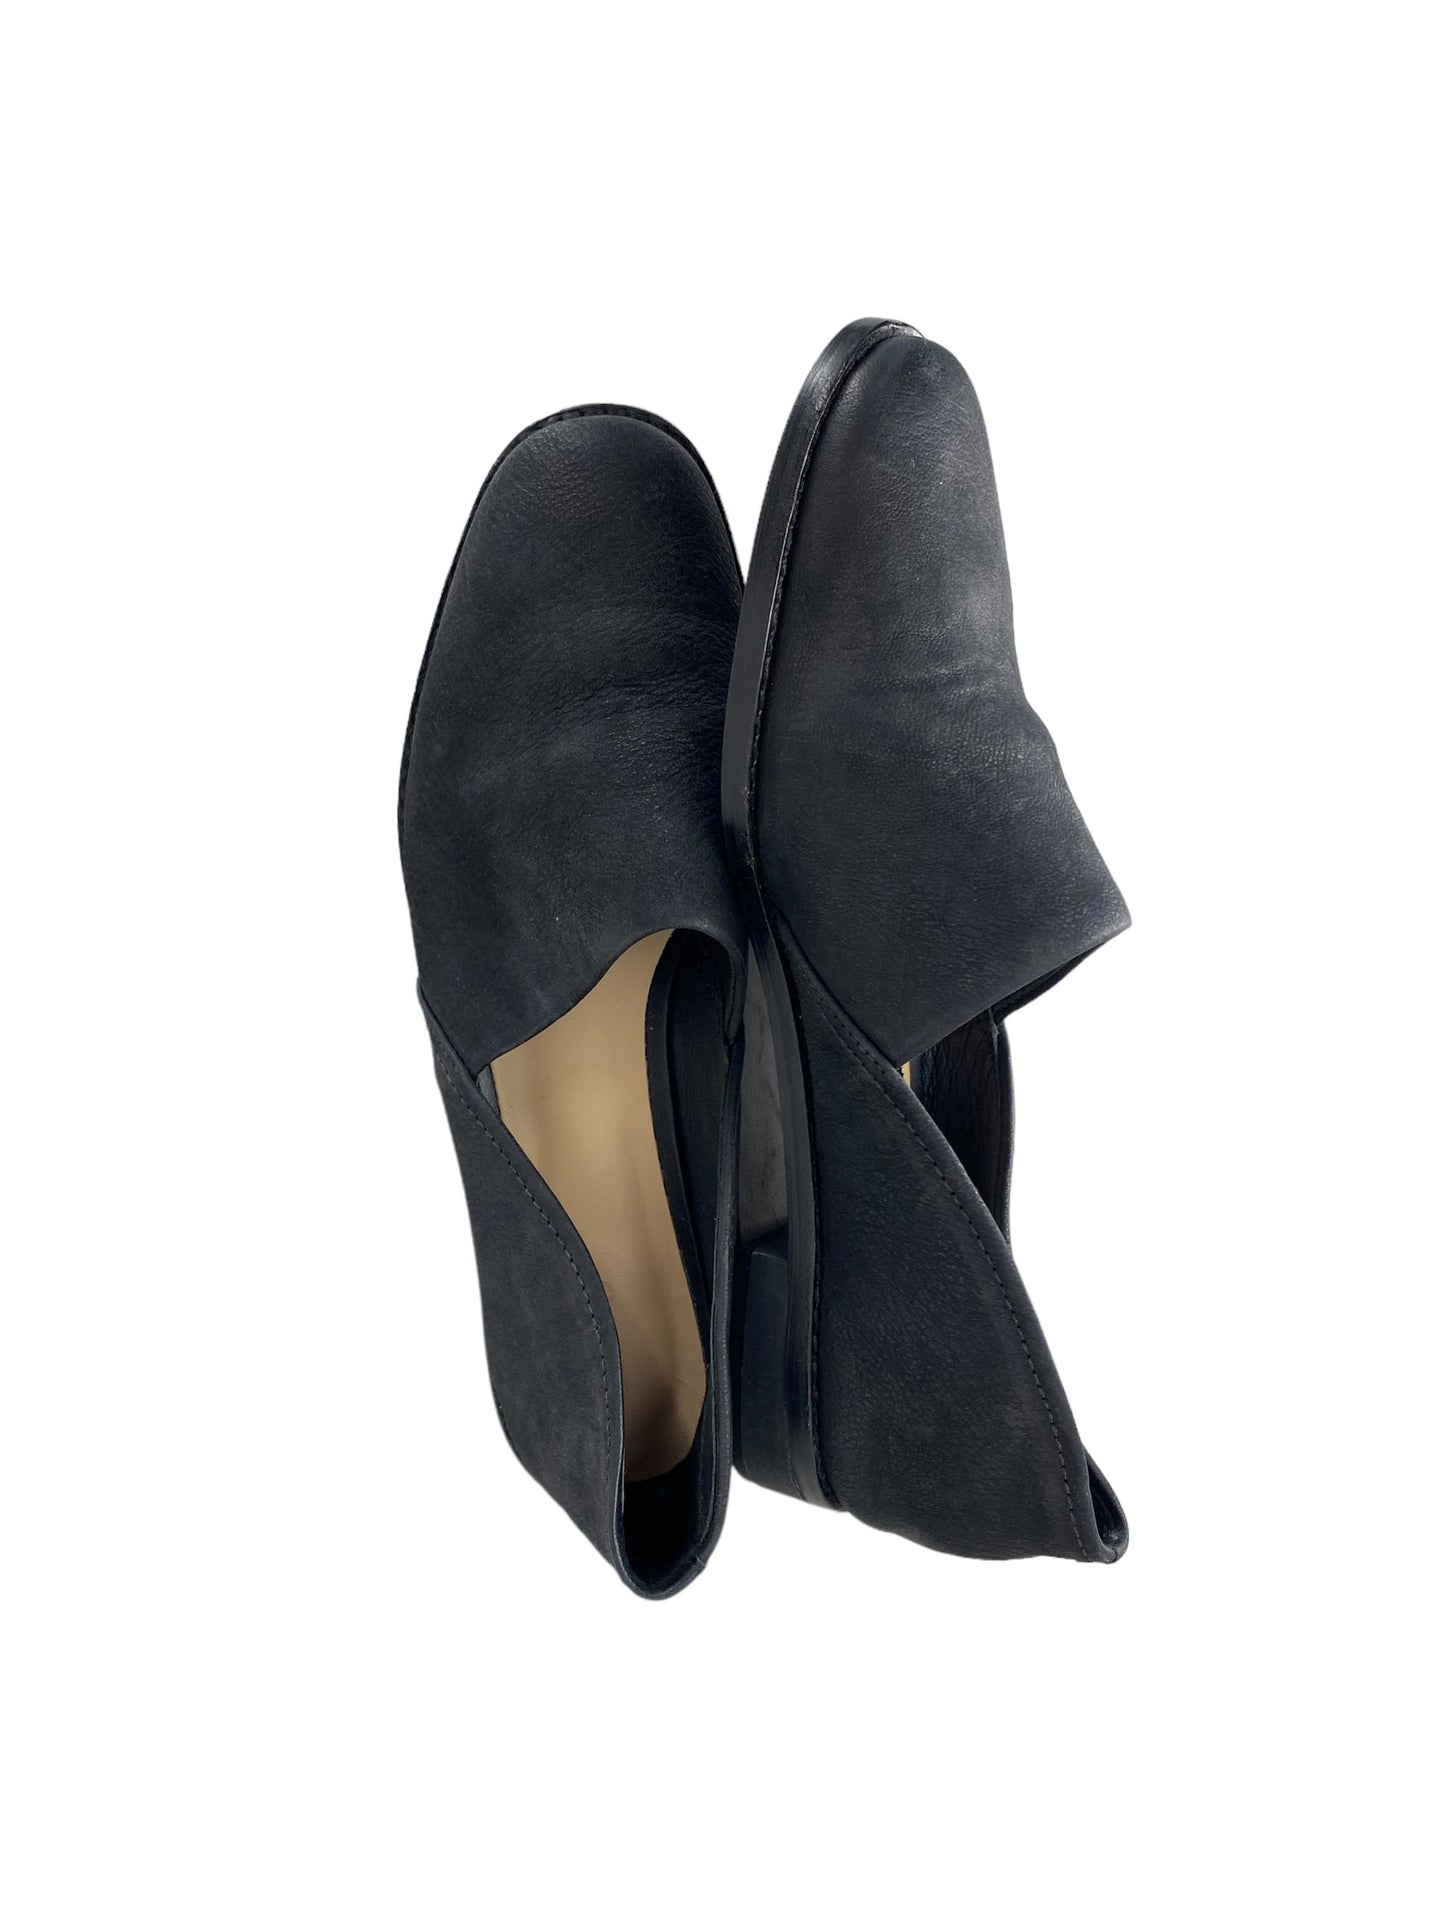 Black Shoes Flats Clarks, Size 8